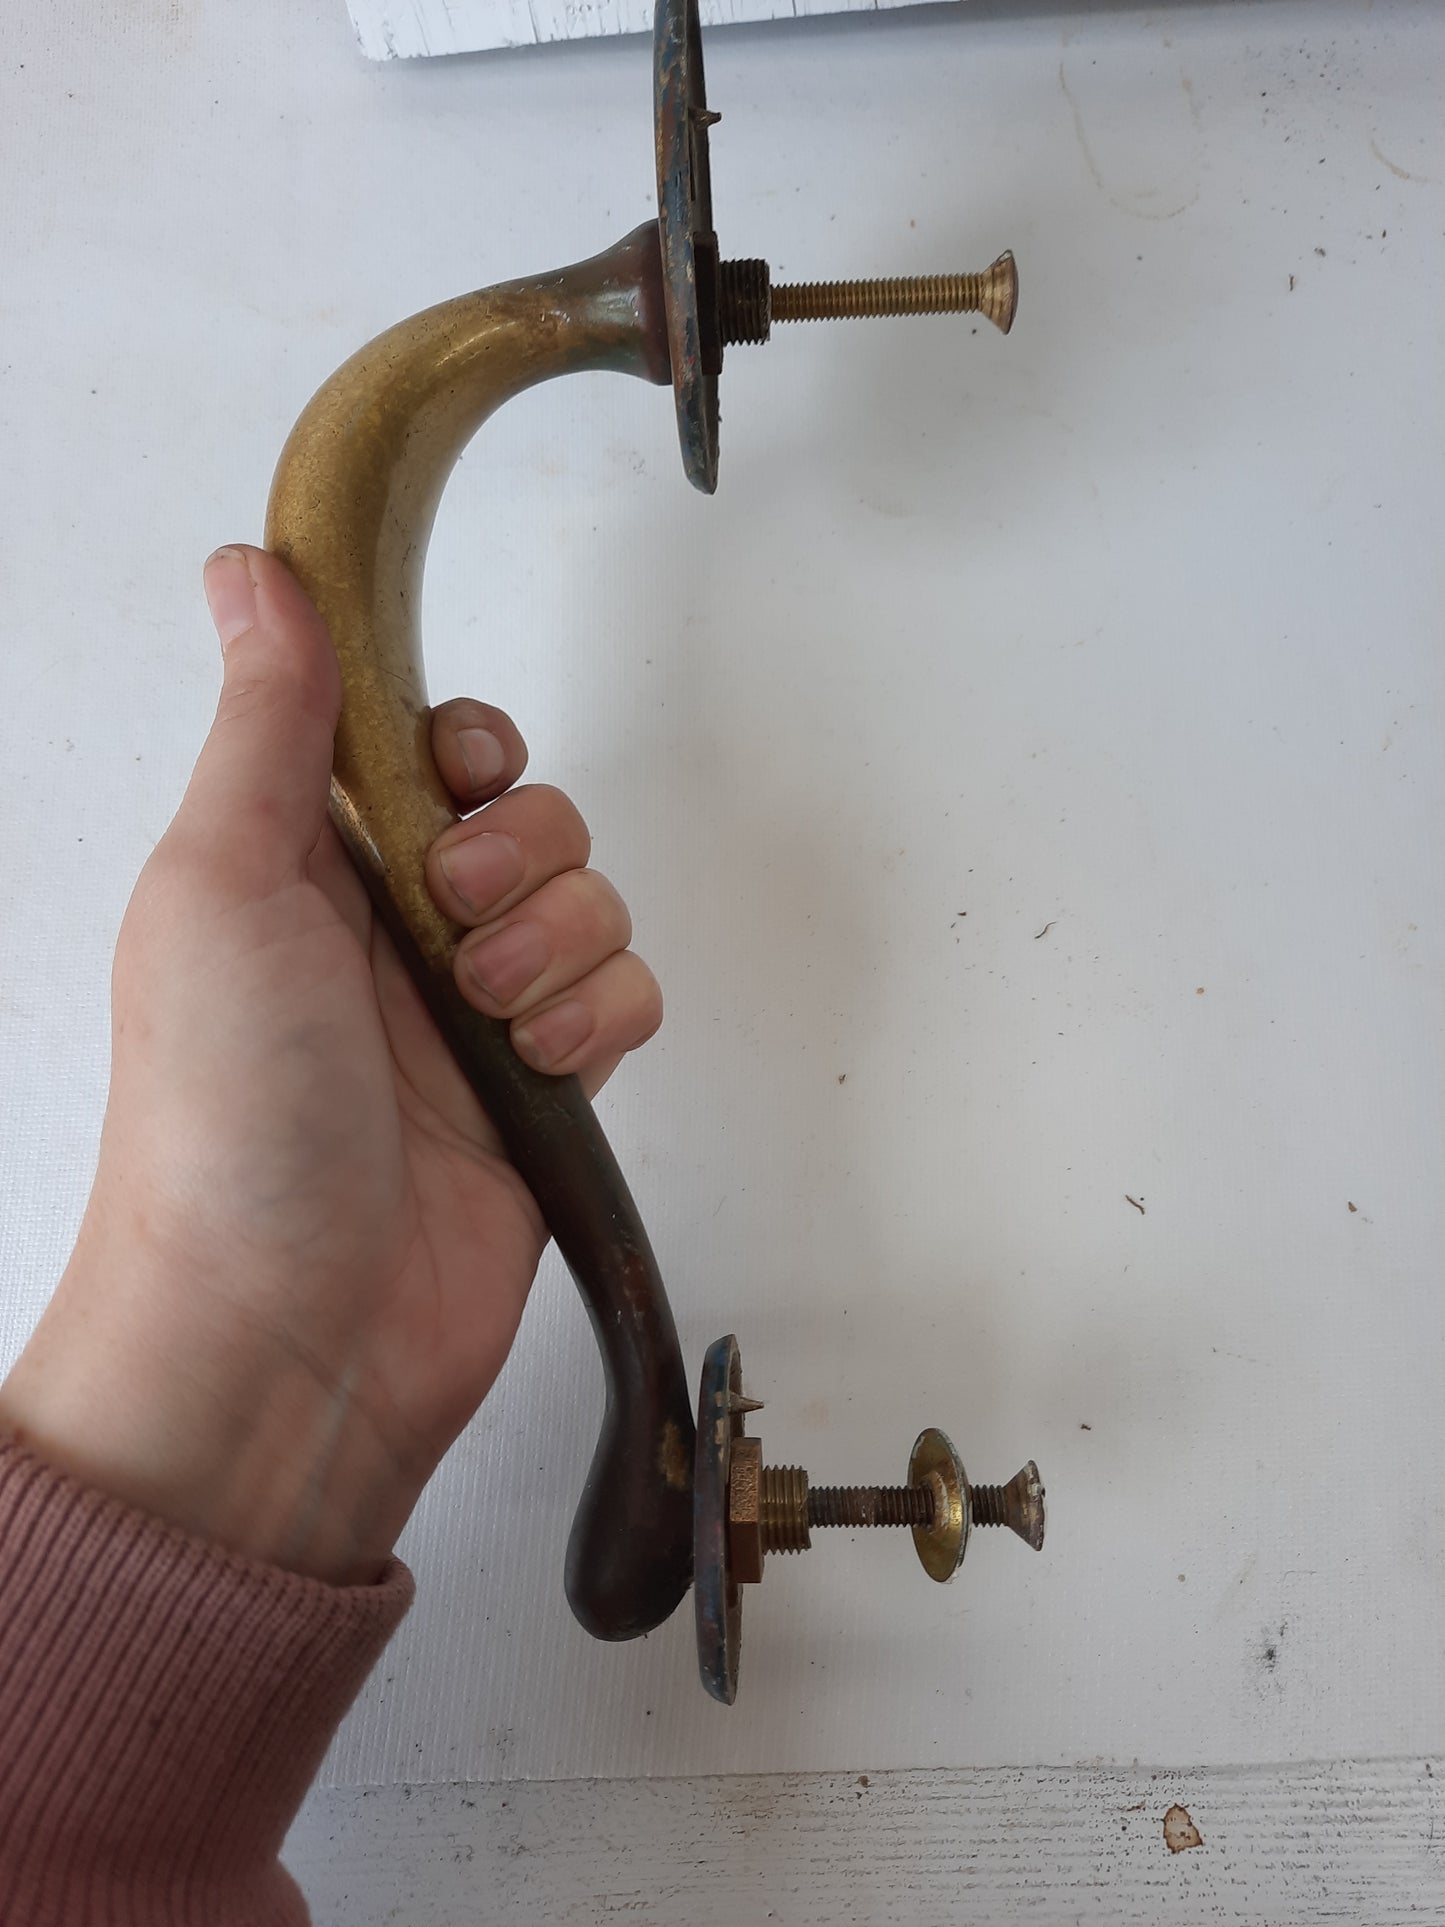 Pair of Solid Bronze or Brass Vintage Door Pulls, Vintage Bronze Door Handles